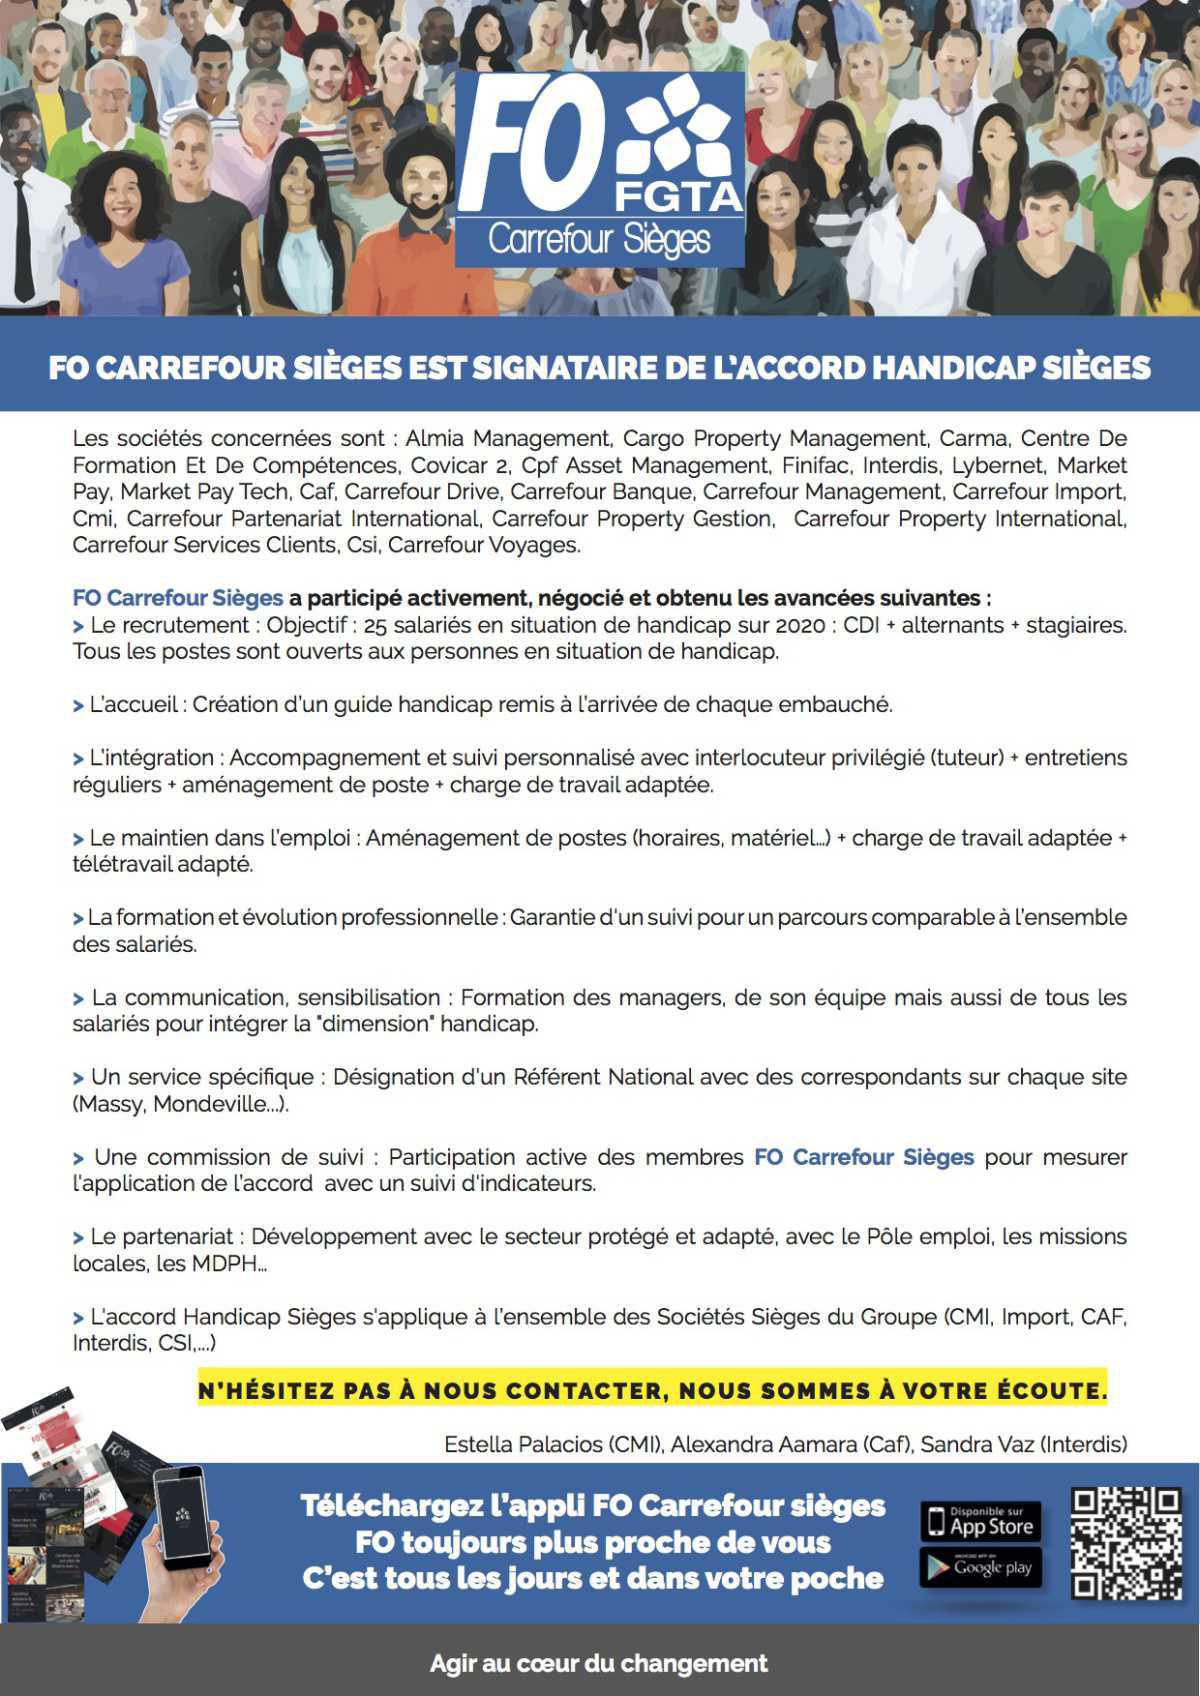 FO Carrefour Sièges est signataire de l'Accord Handicap!